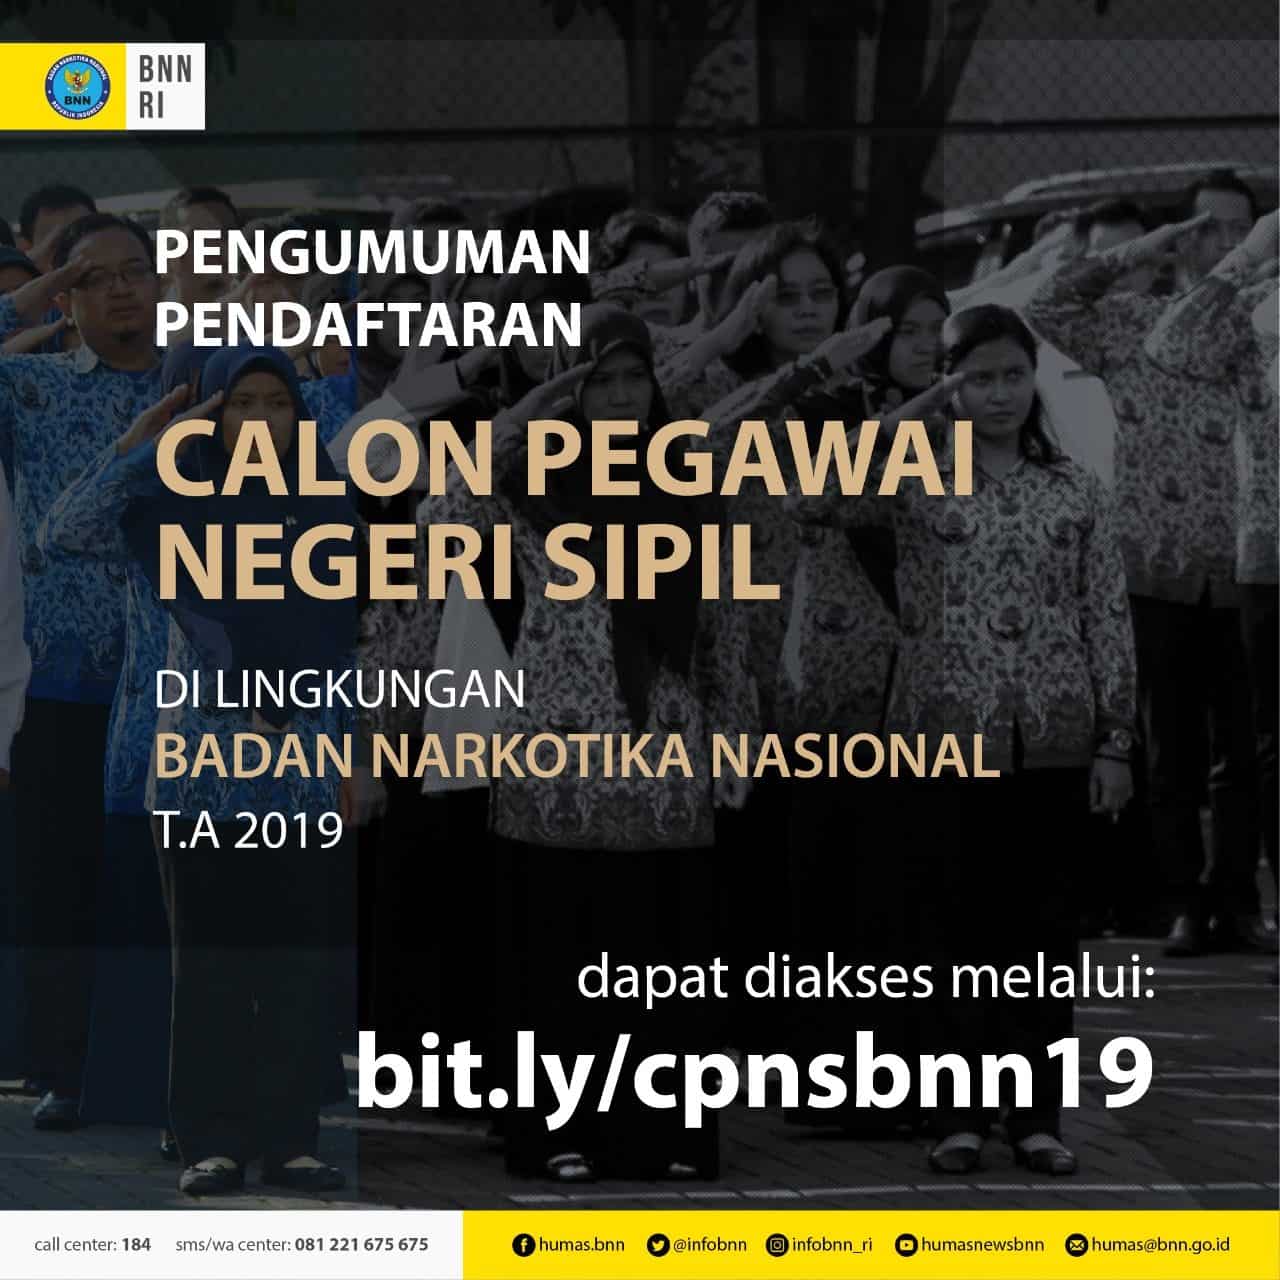 PENGUMUMAN PENGADAAN CALON PEGAWAI NEGERI SIPIL BADAN NARKOTIKA NASIONAL T.A. 2019